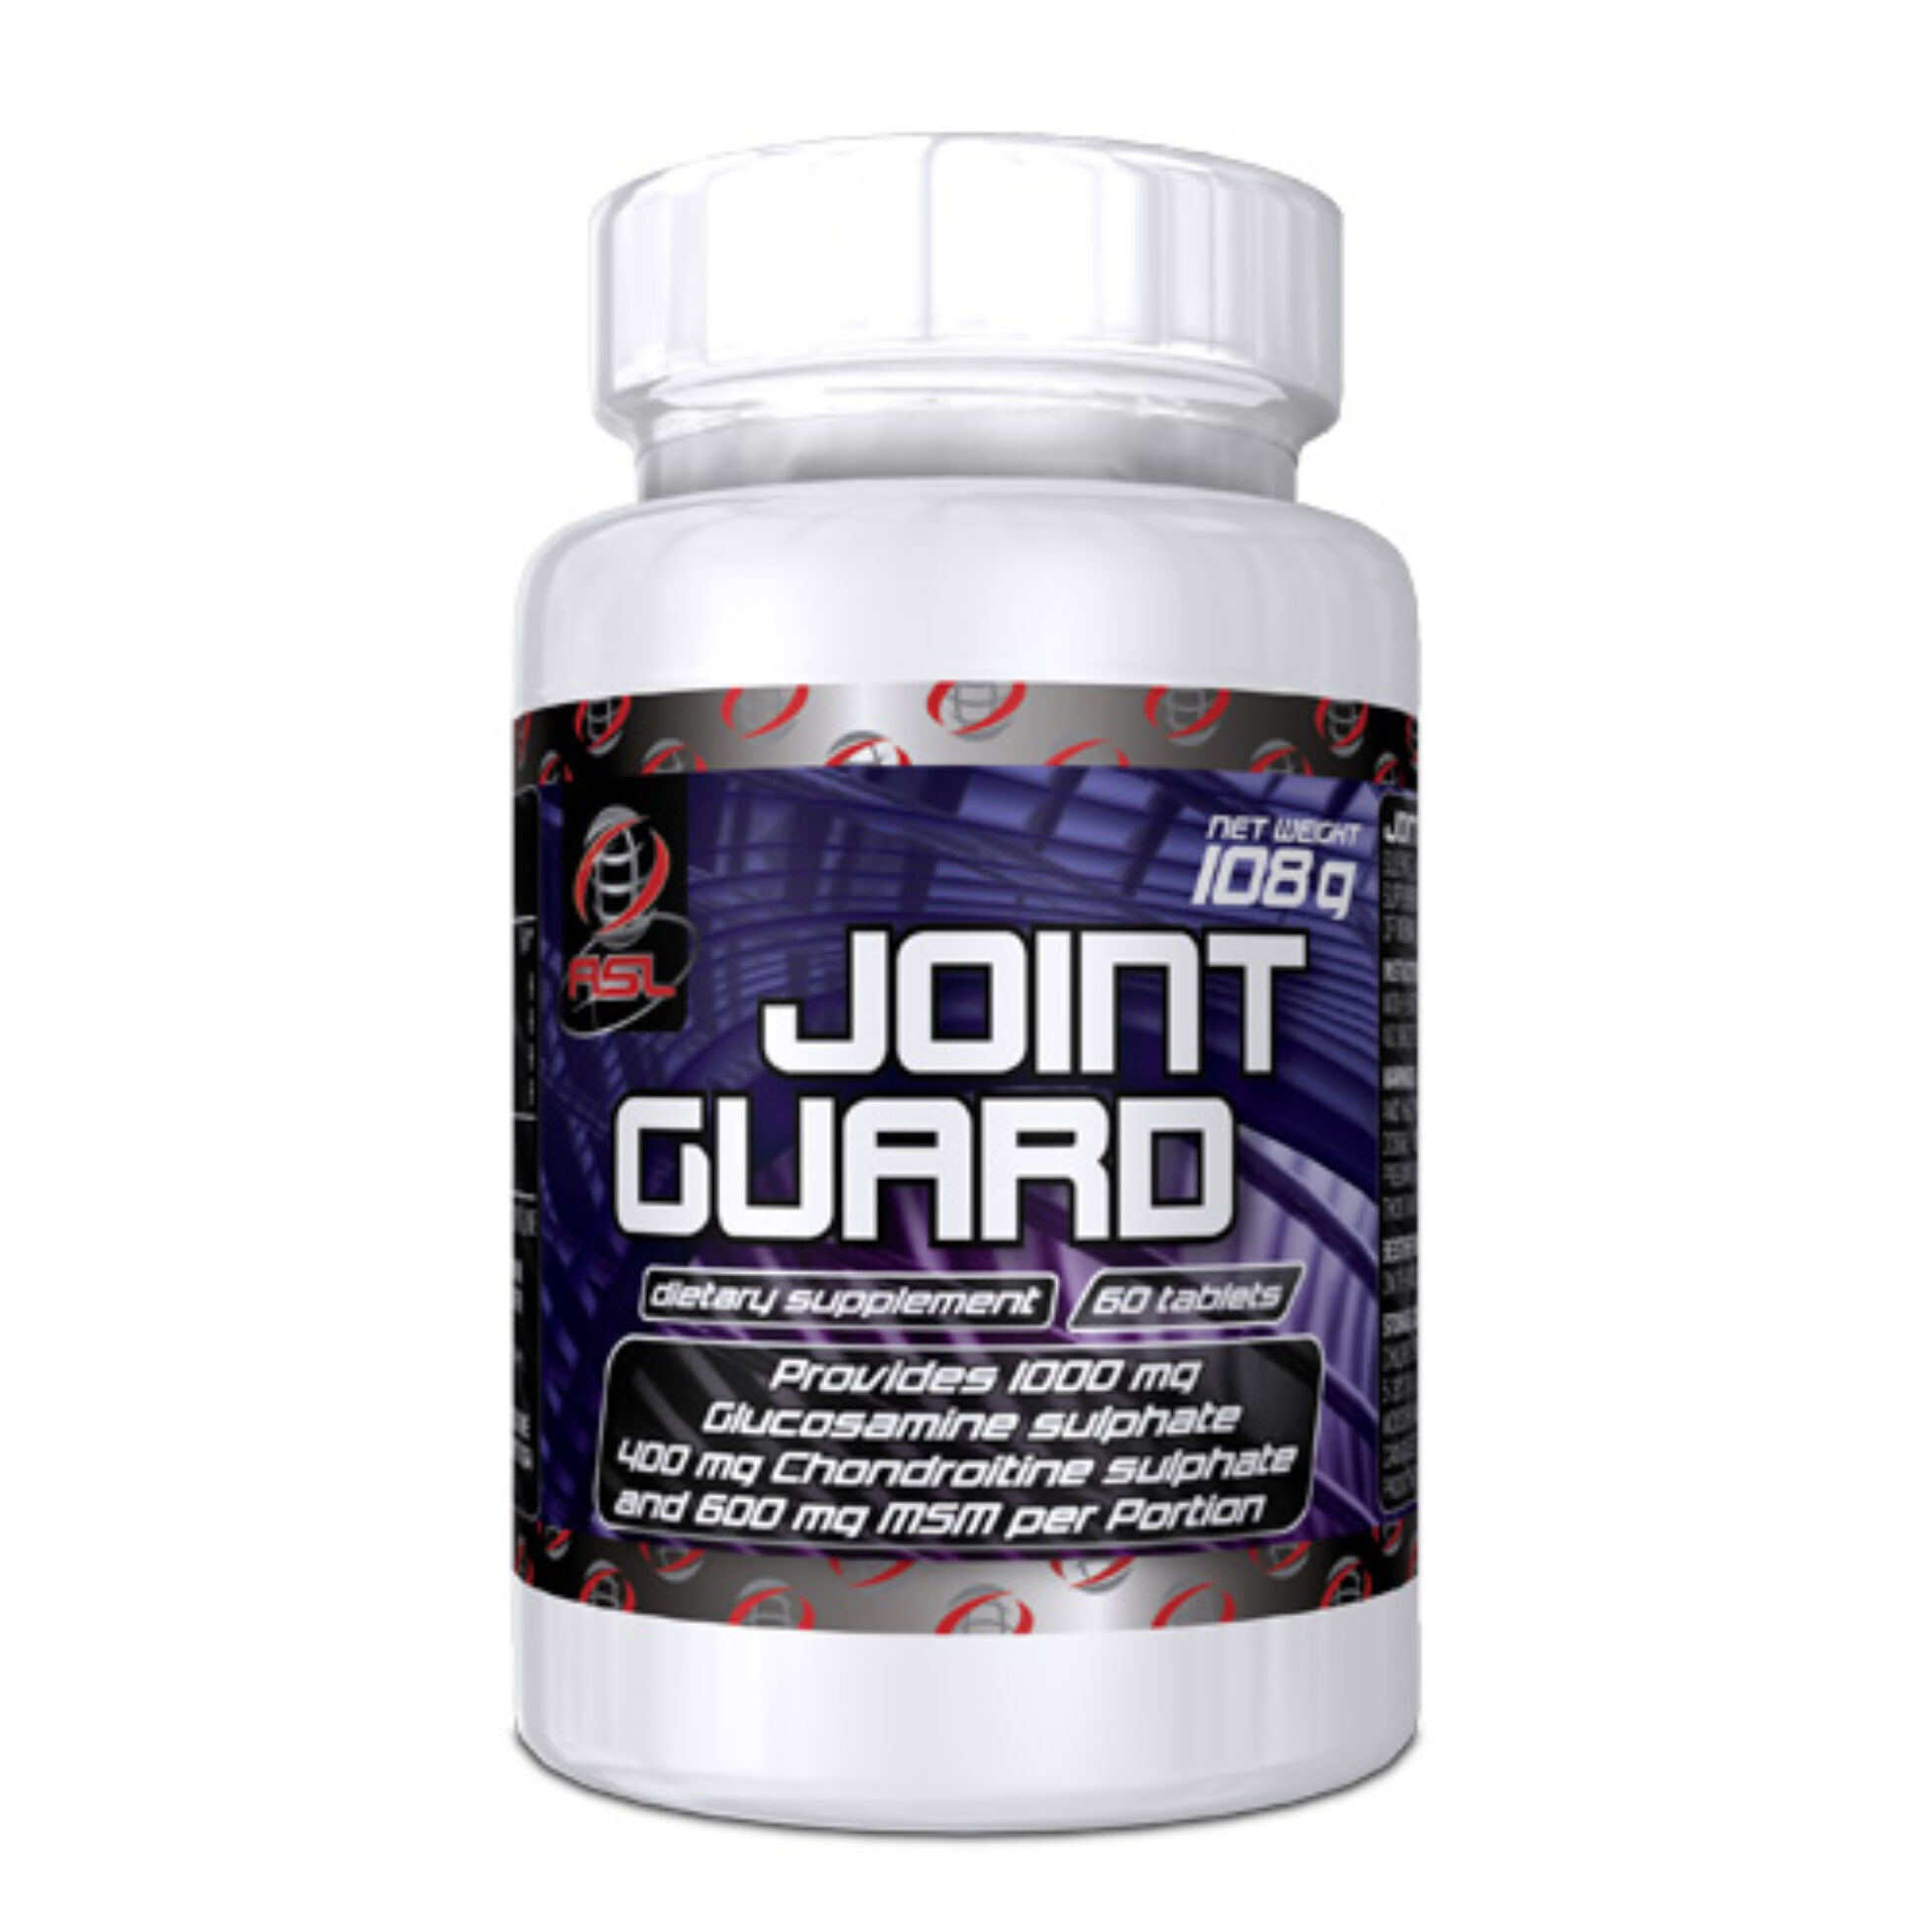 Joint Guard ízületvédő (60 tabletta)